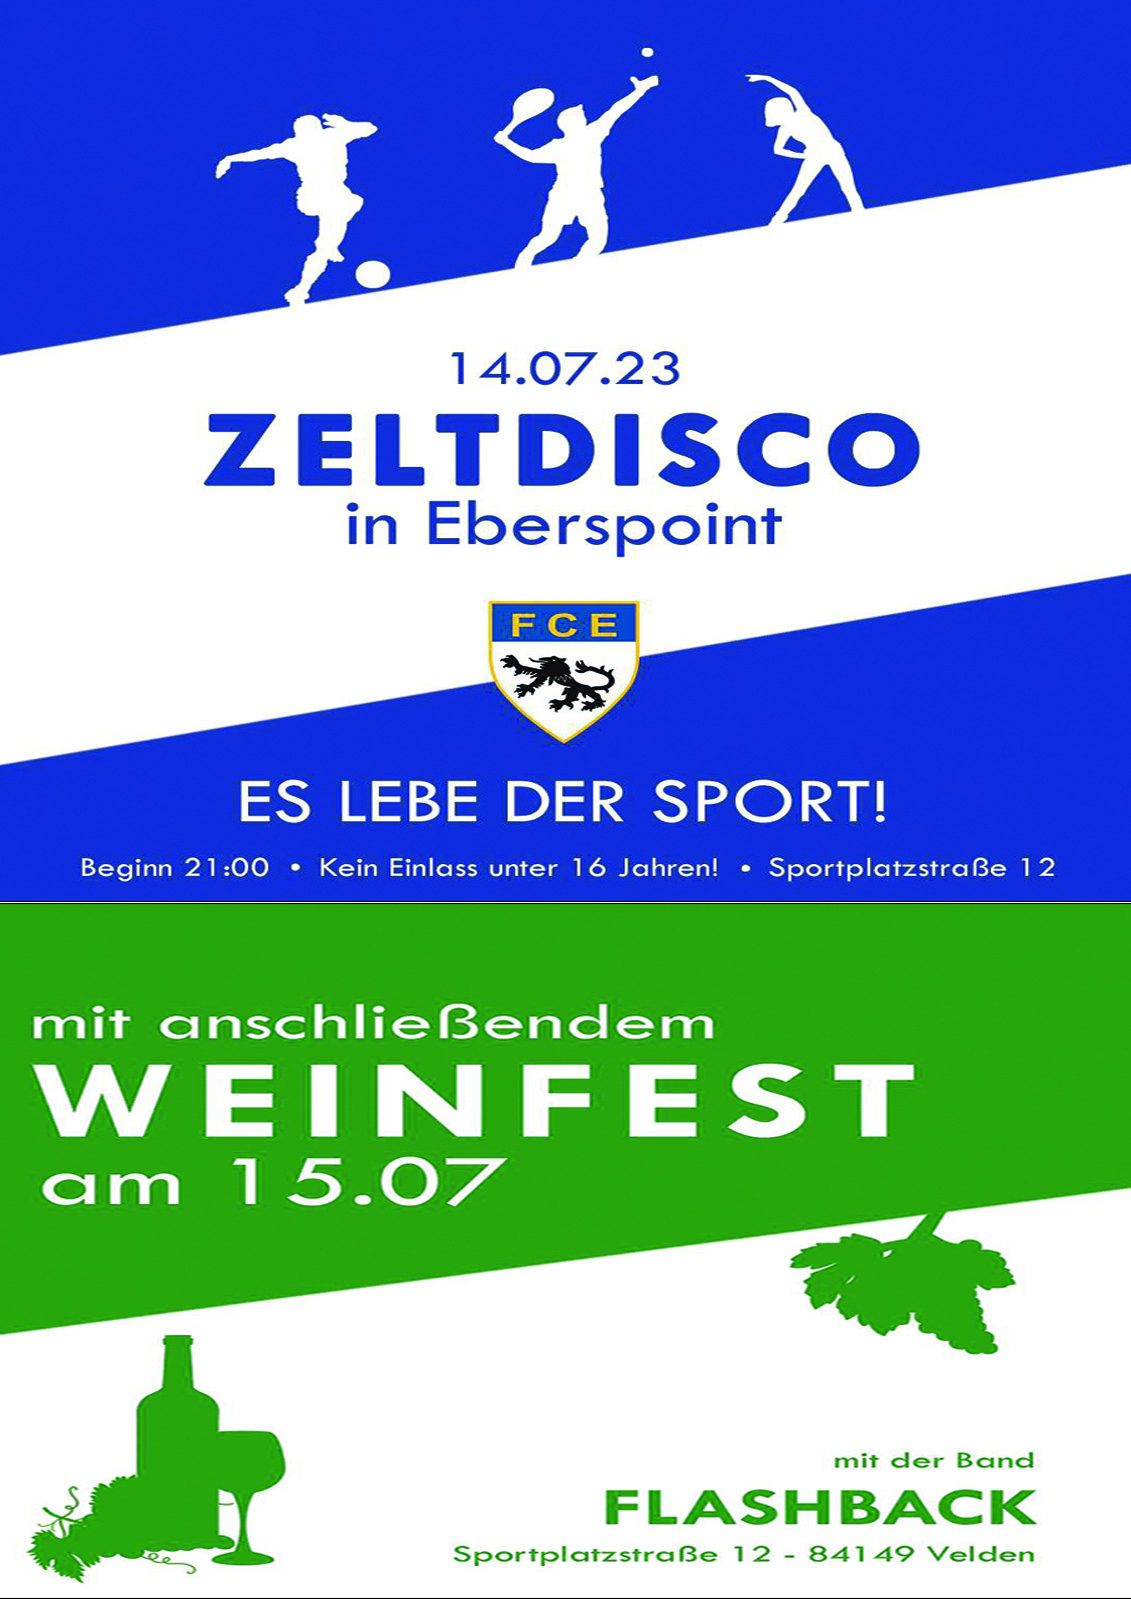 Veranstaltungsplakat Zeltdisco und Weinfest Eberspoint